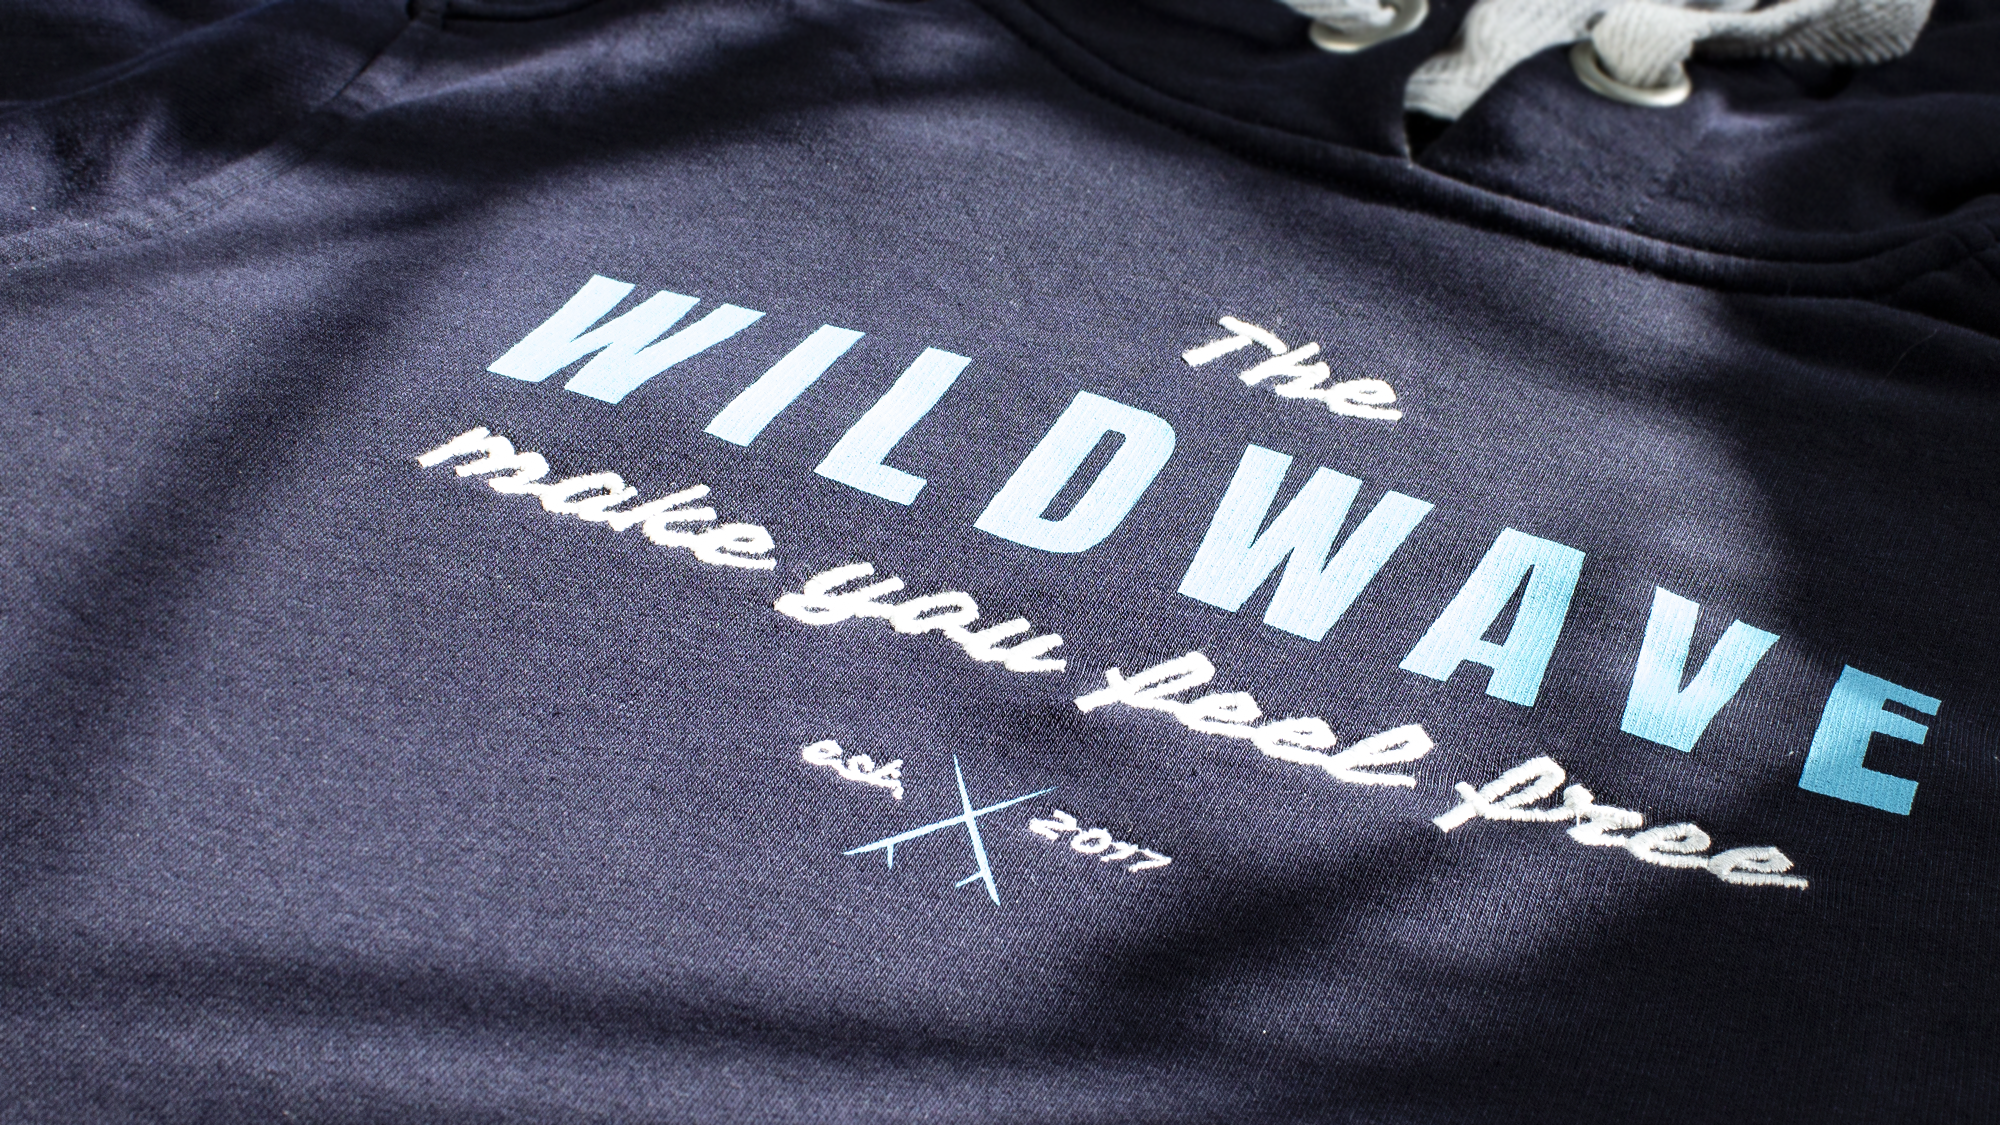 Wildwave Cuxhaven Branding by Art+Code Studio